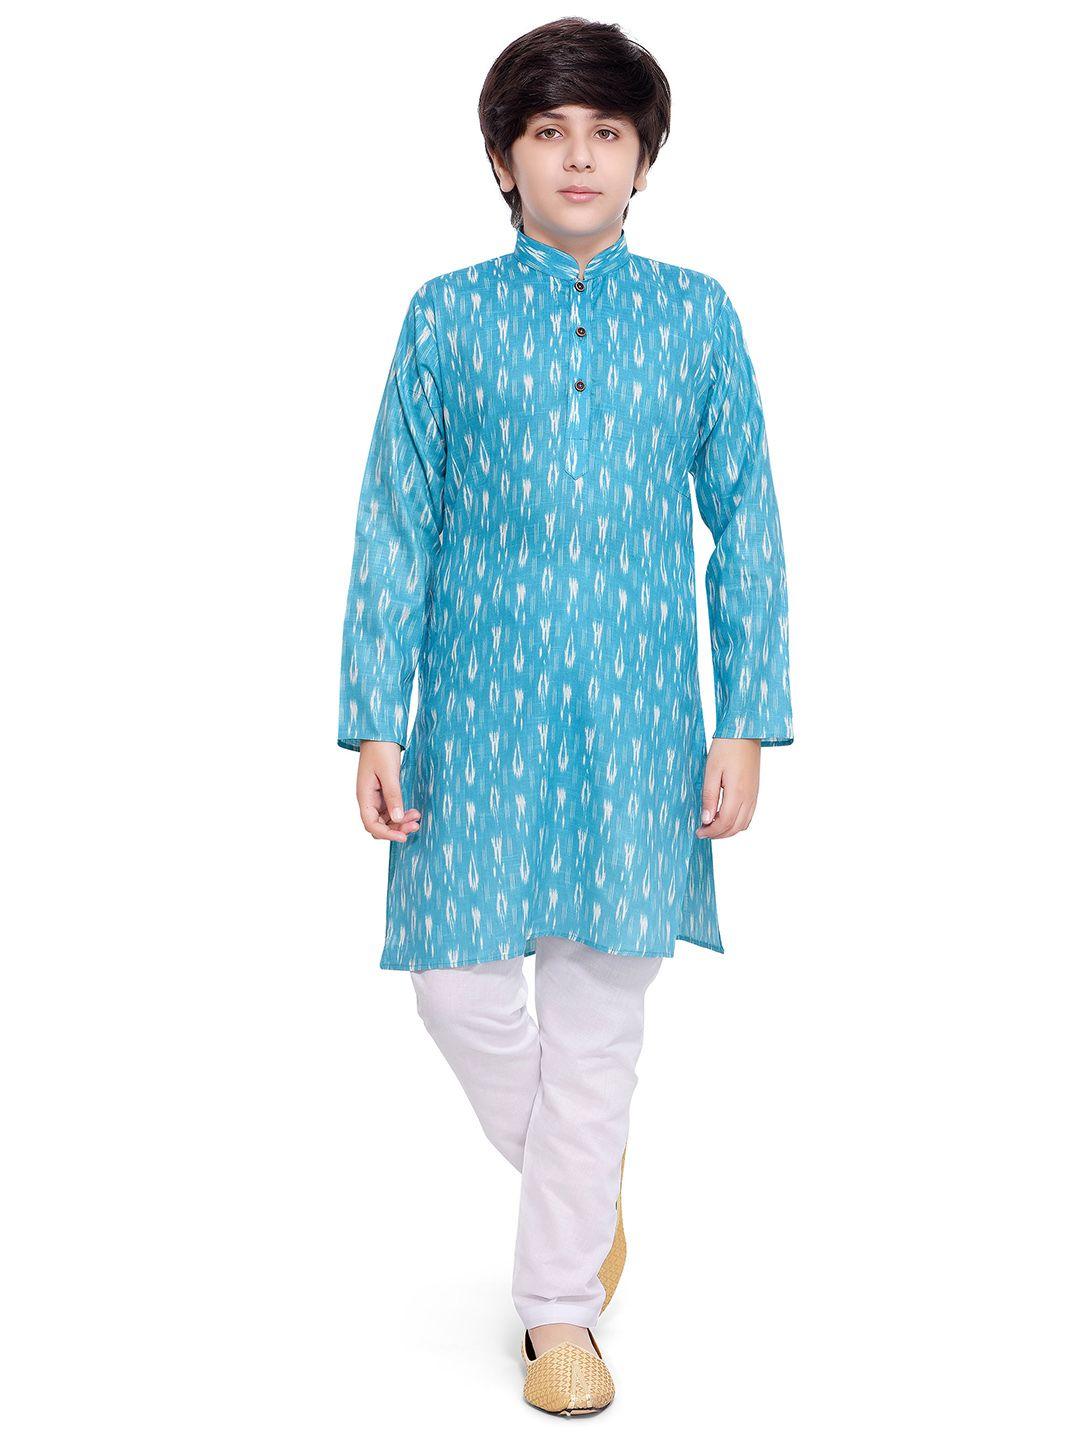 jeetethnics boys blue & white printed regular kurta with pyjamas